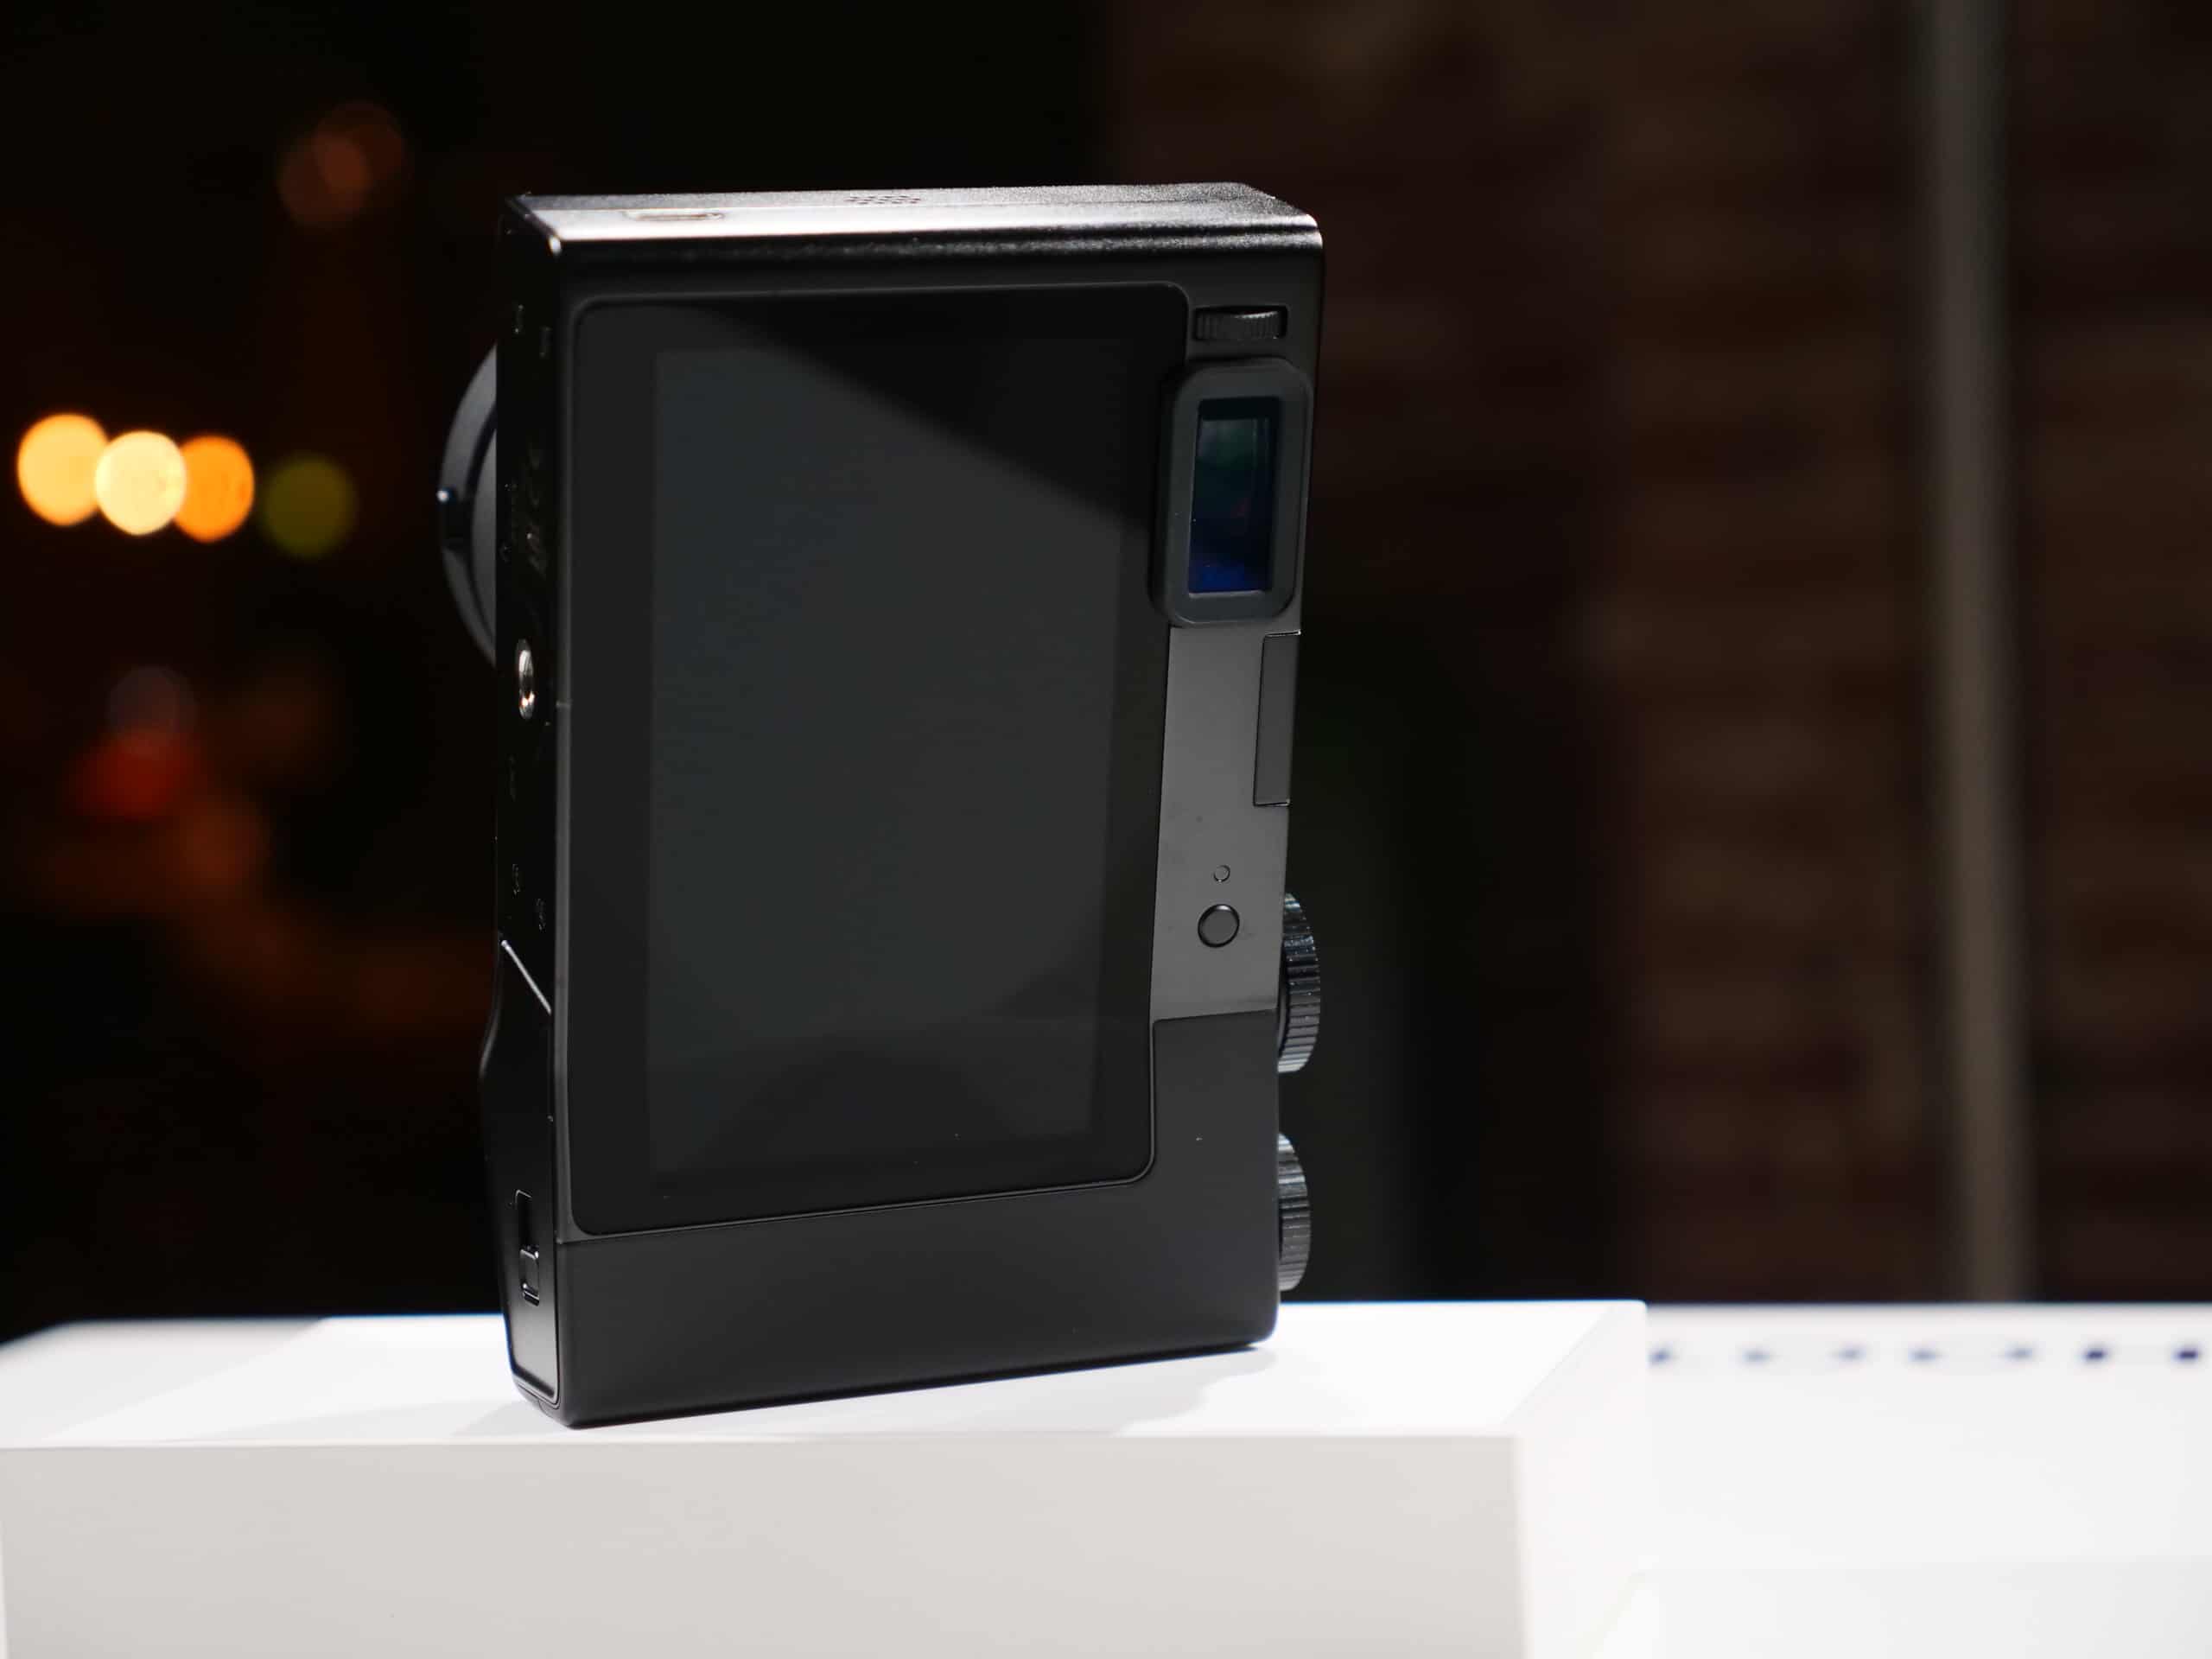 Máy ảnh chạy Android Zeiss ZX1 đã cho phép đặt trước với giá 6000 USD